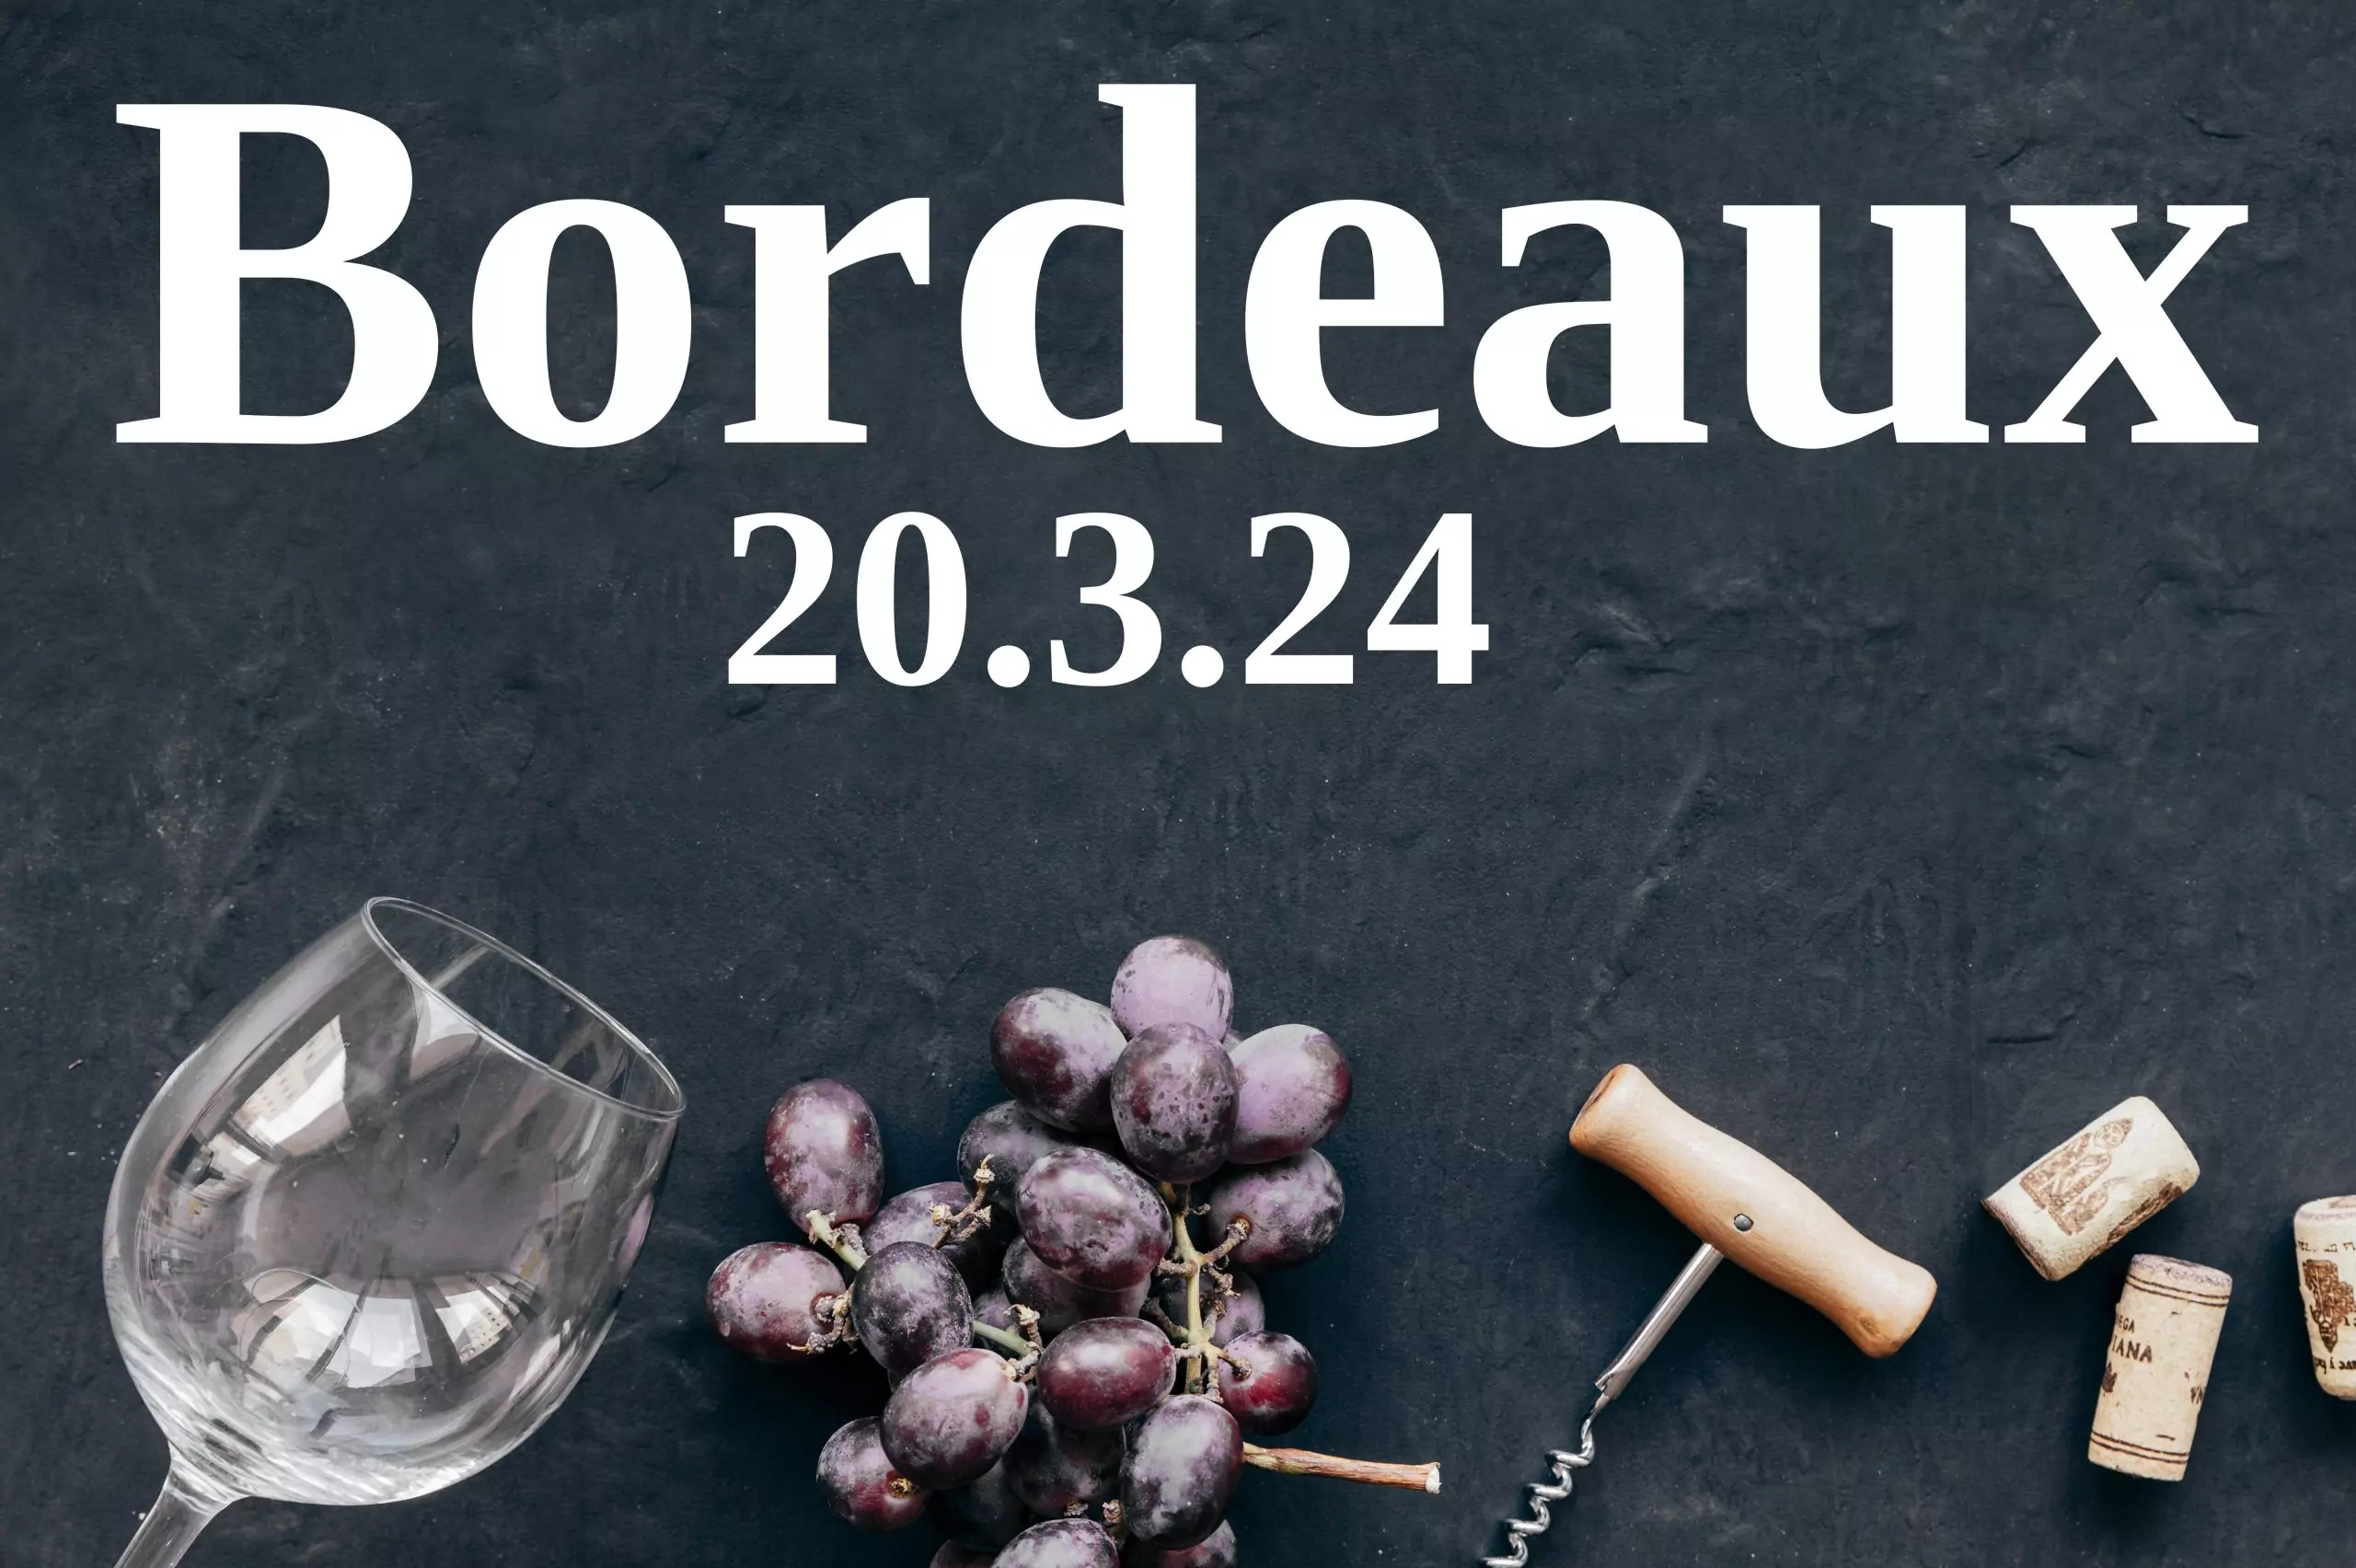 Mehr über den Artikel erfahren Mythos Bordeaux – Einladung zur Weinprobe am 20.3.24